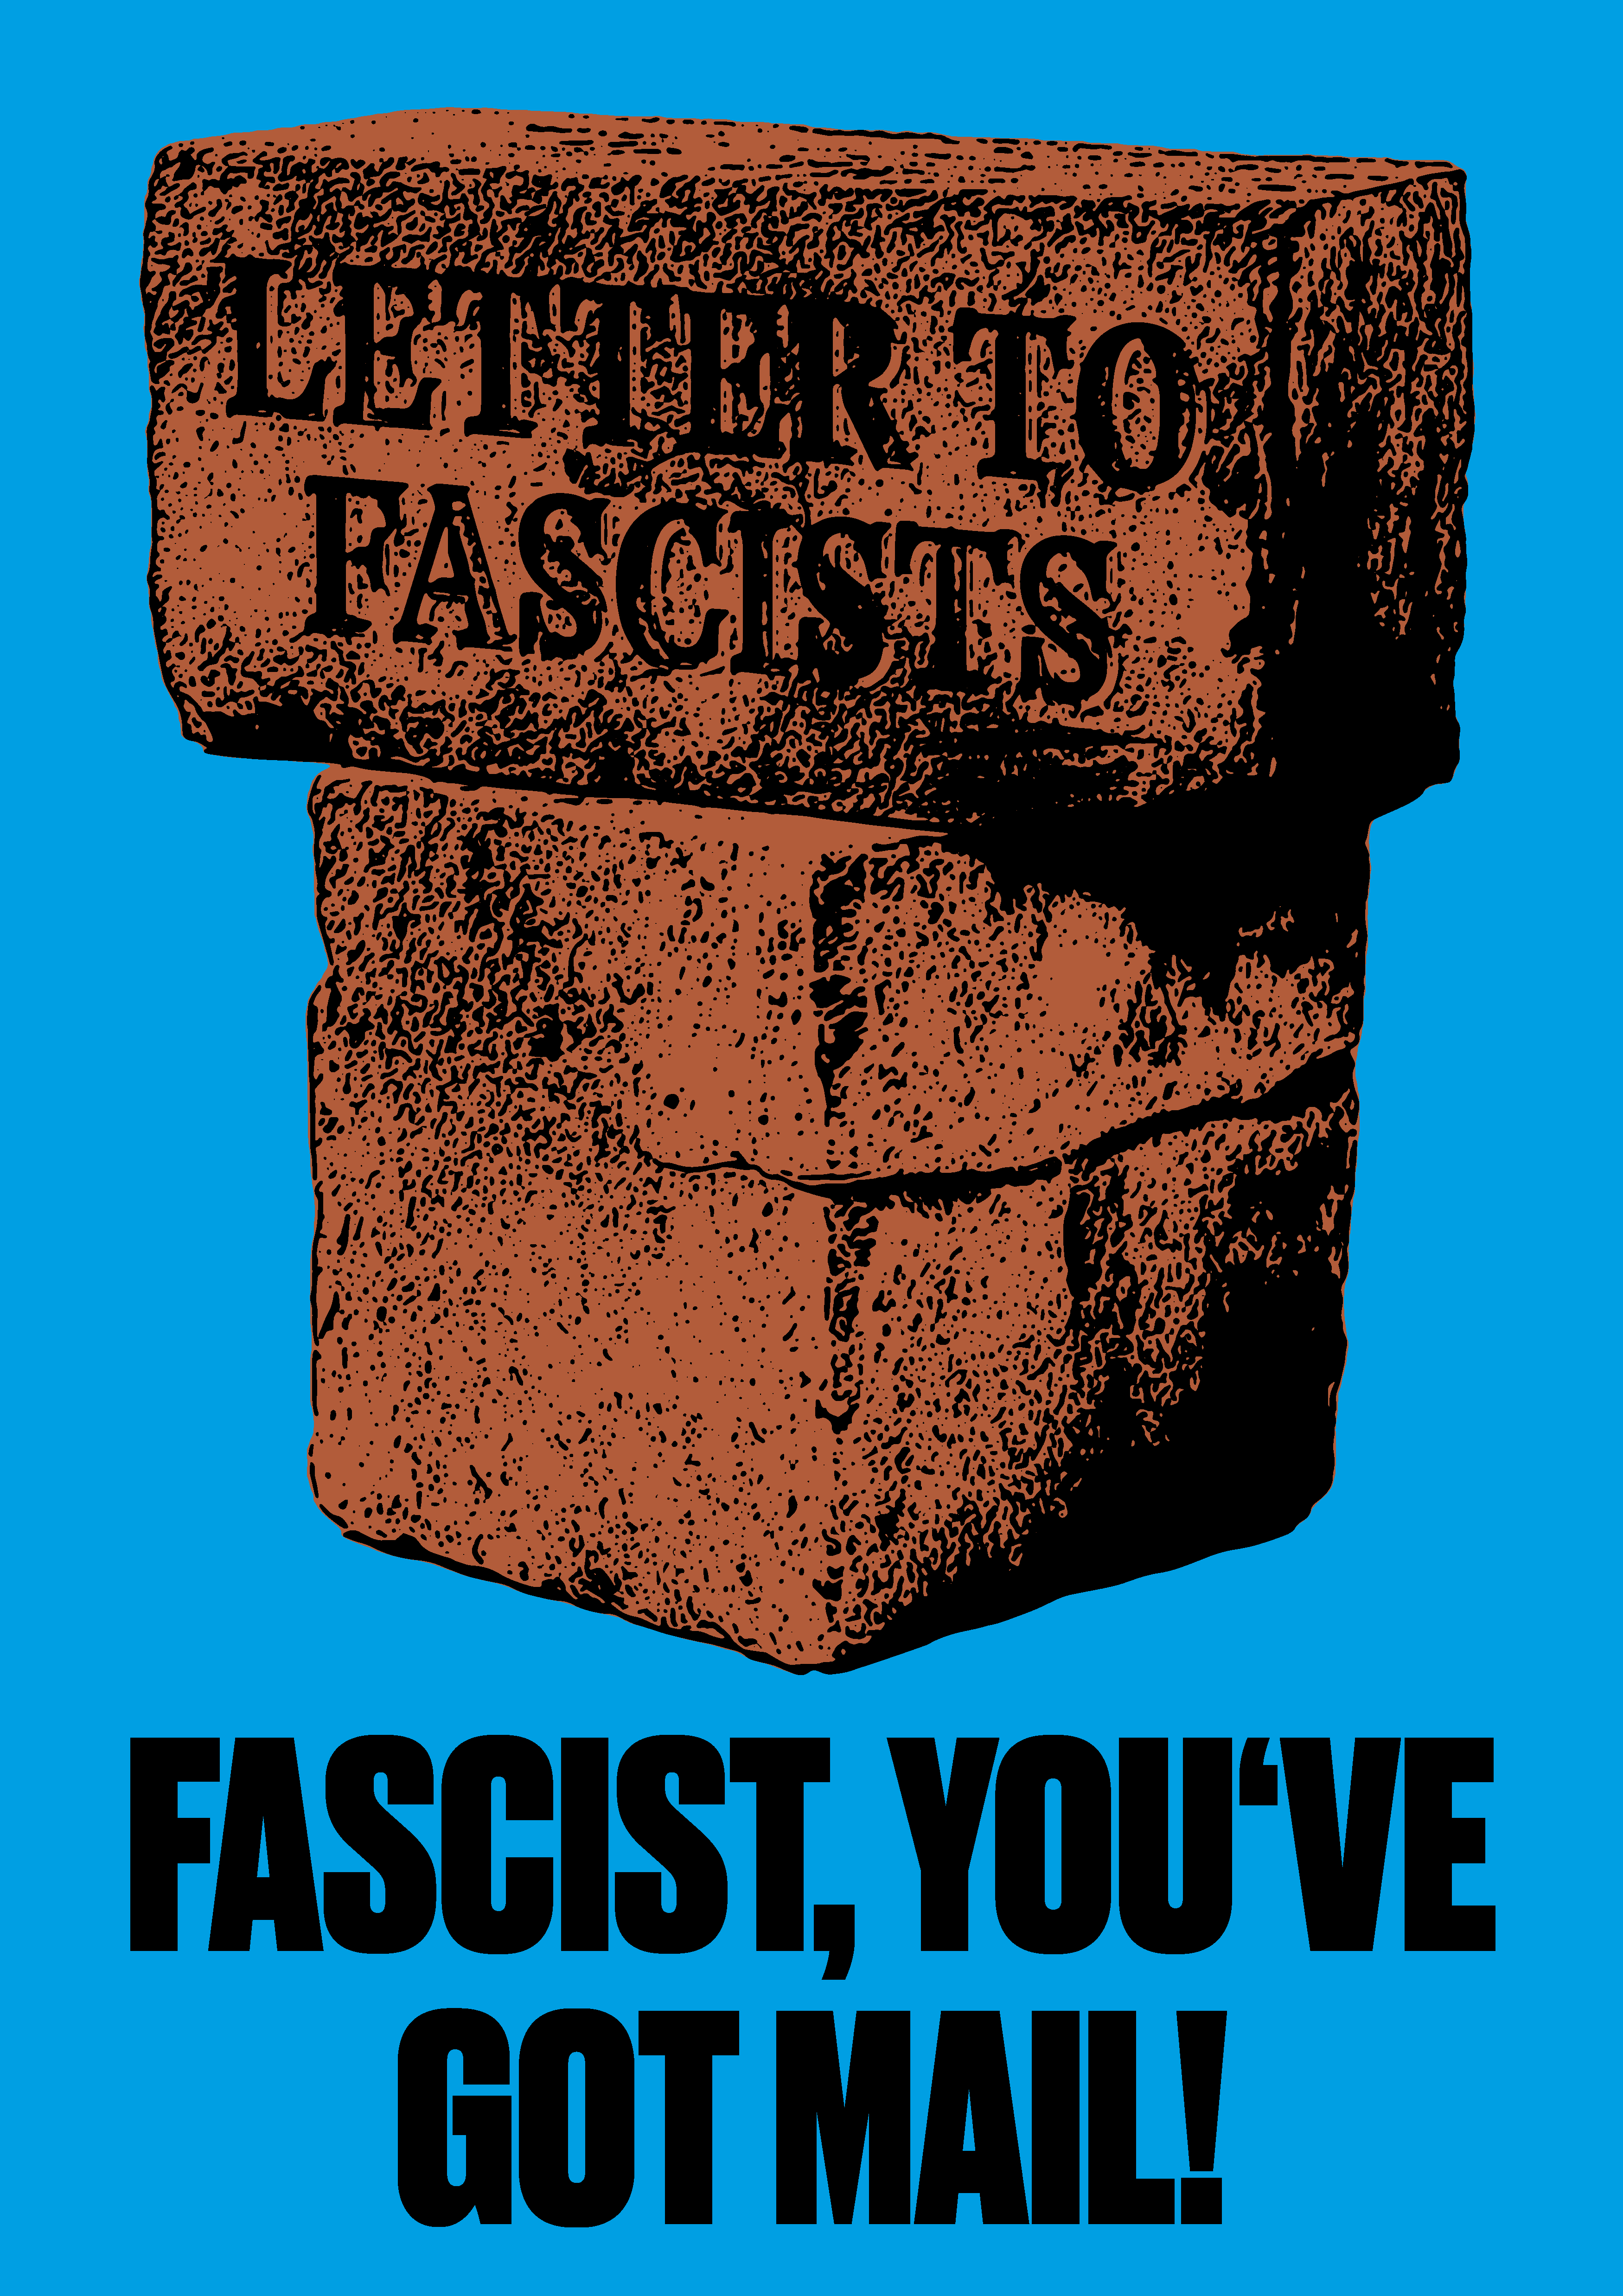 Fascist, you've got mail!